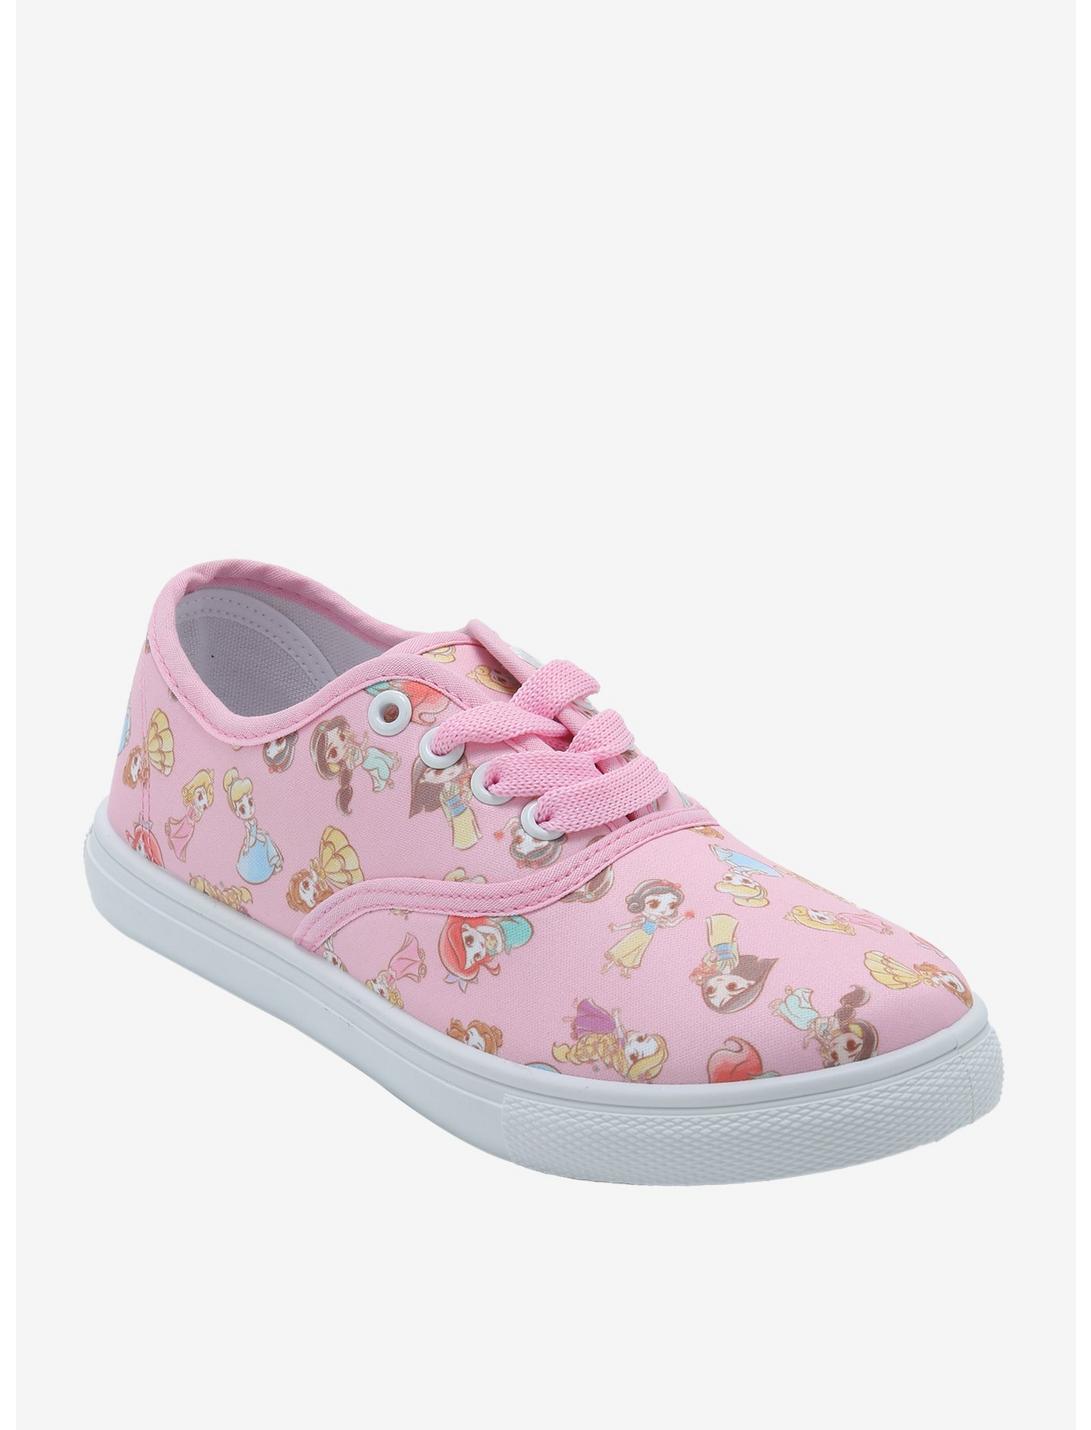 Disney Princess Chibi Lace-Up Sneakers, MULTI, hi-res